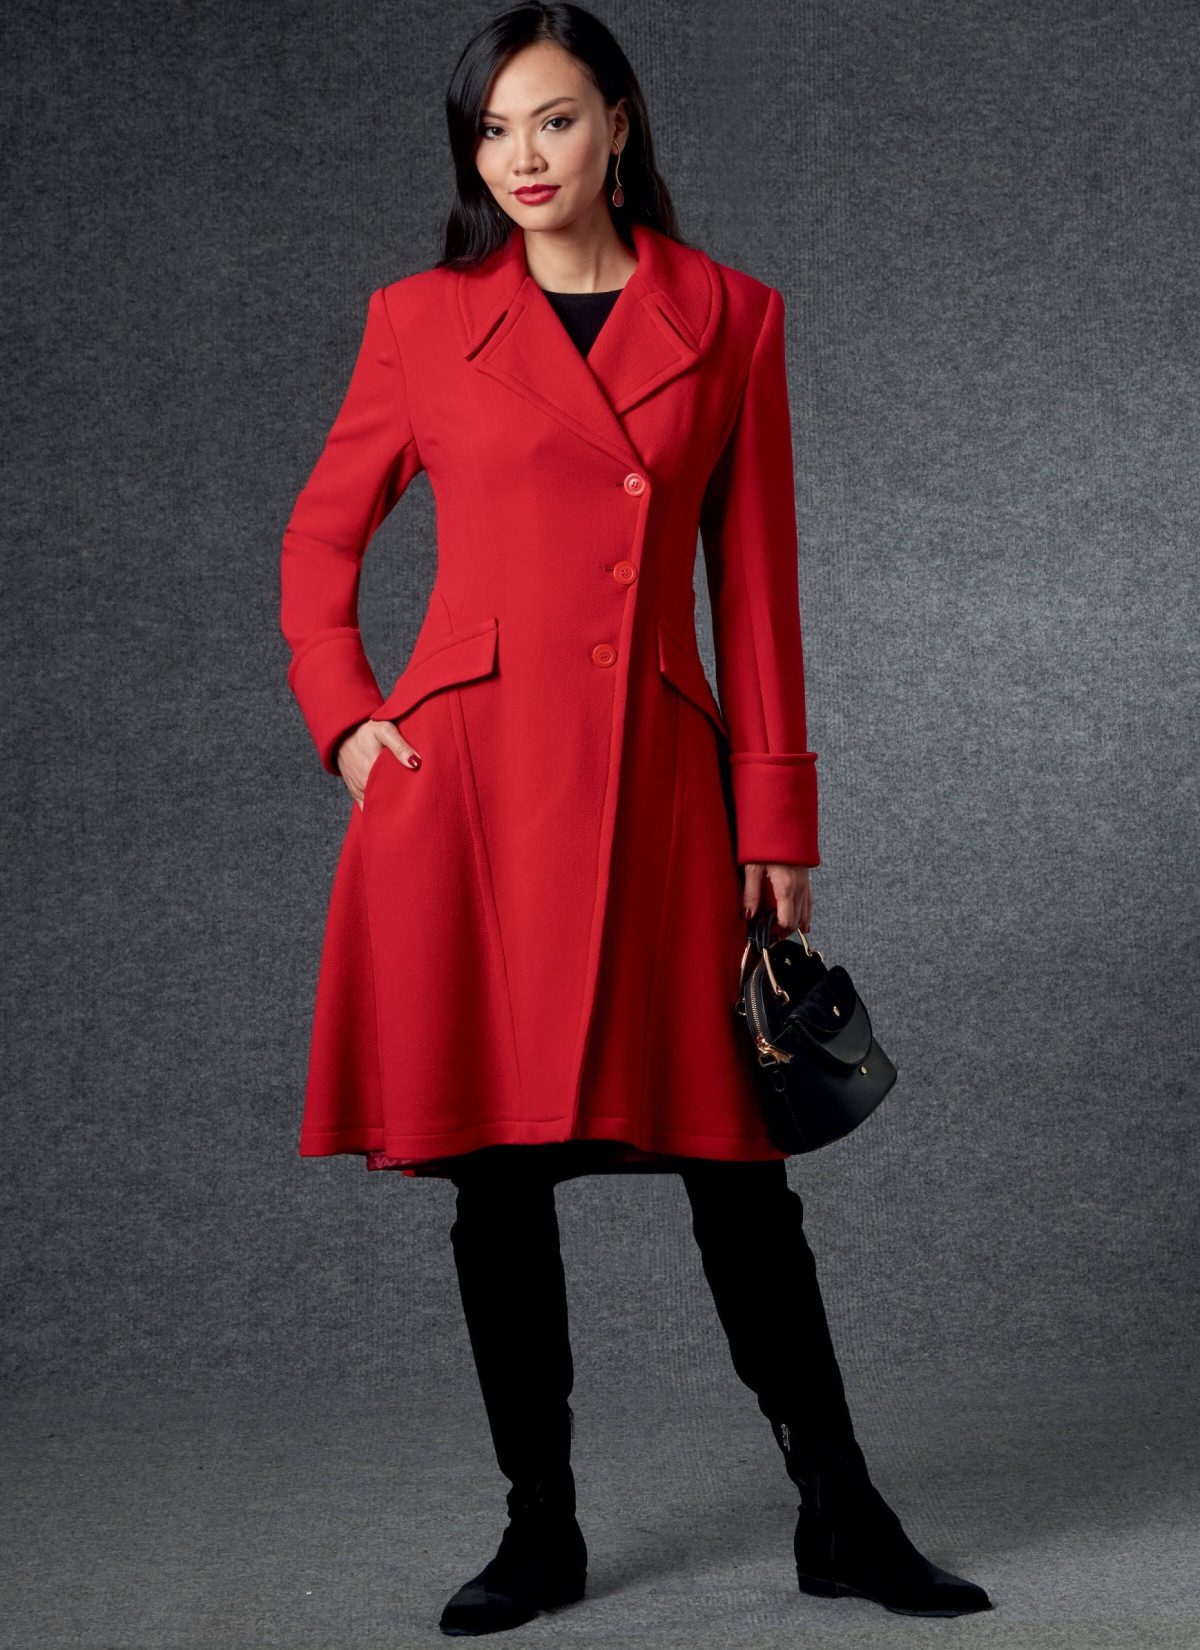 Vogue Patterns V1752 Misses' Coats